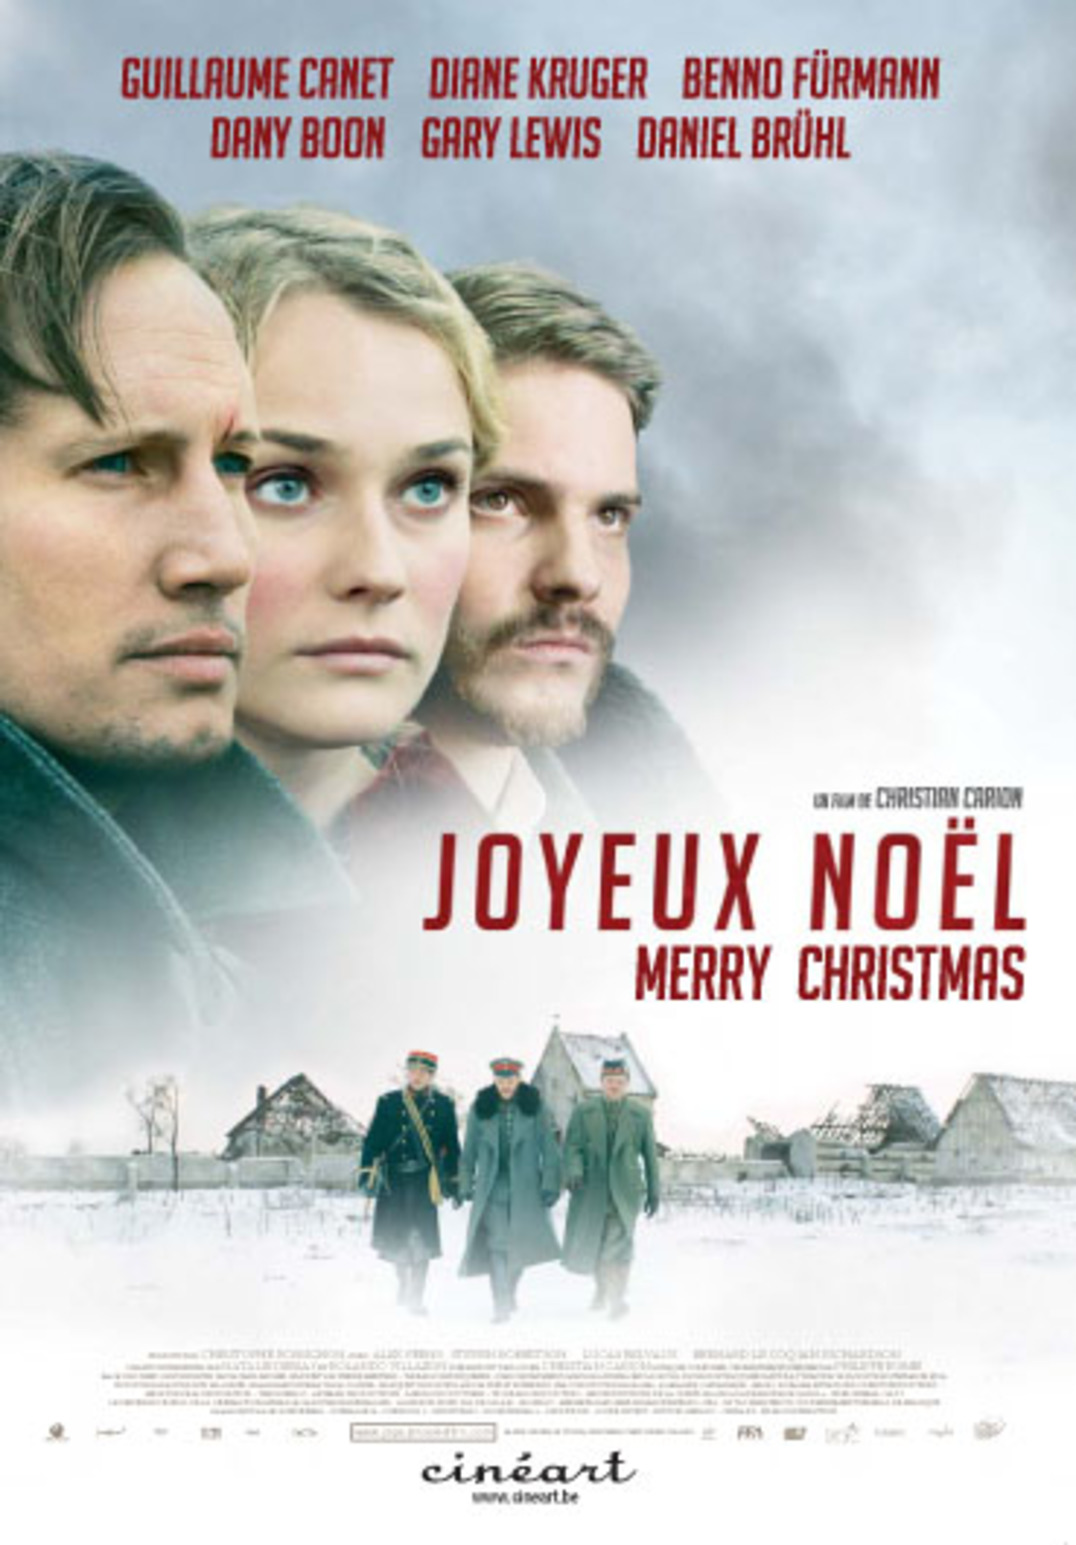 Joyeux Noel (2005) Main Poster